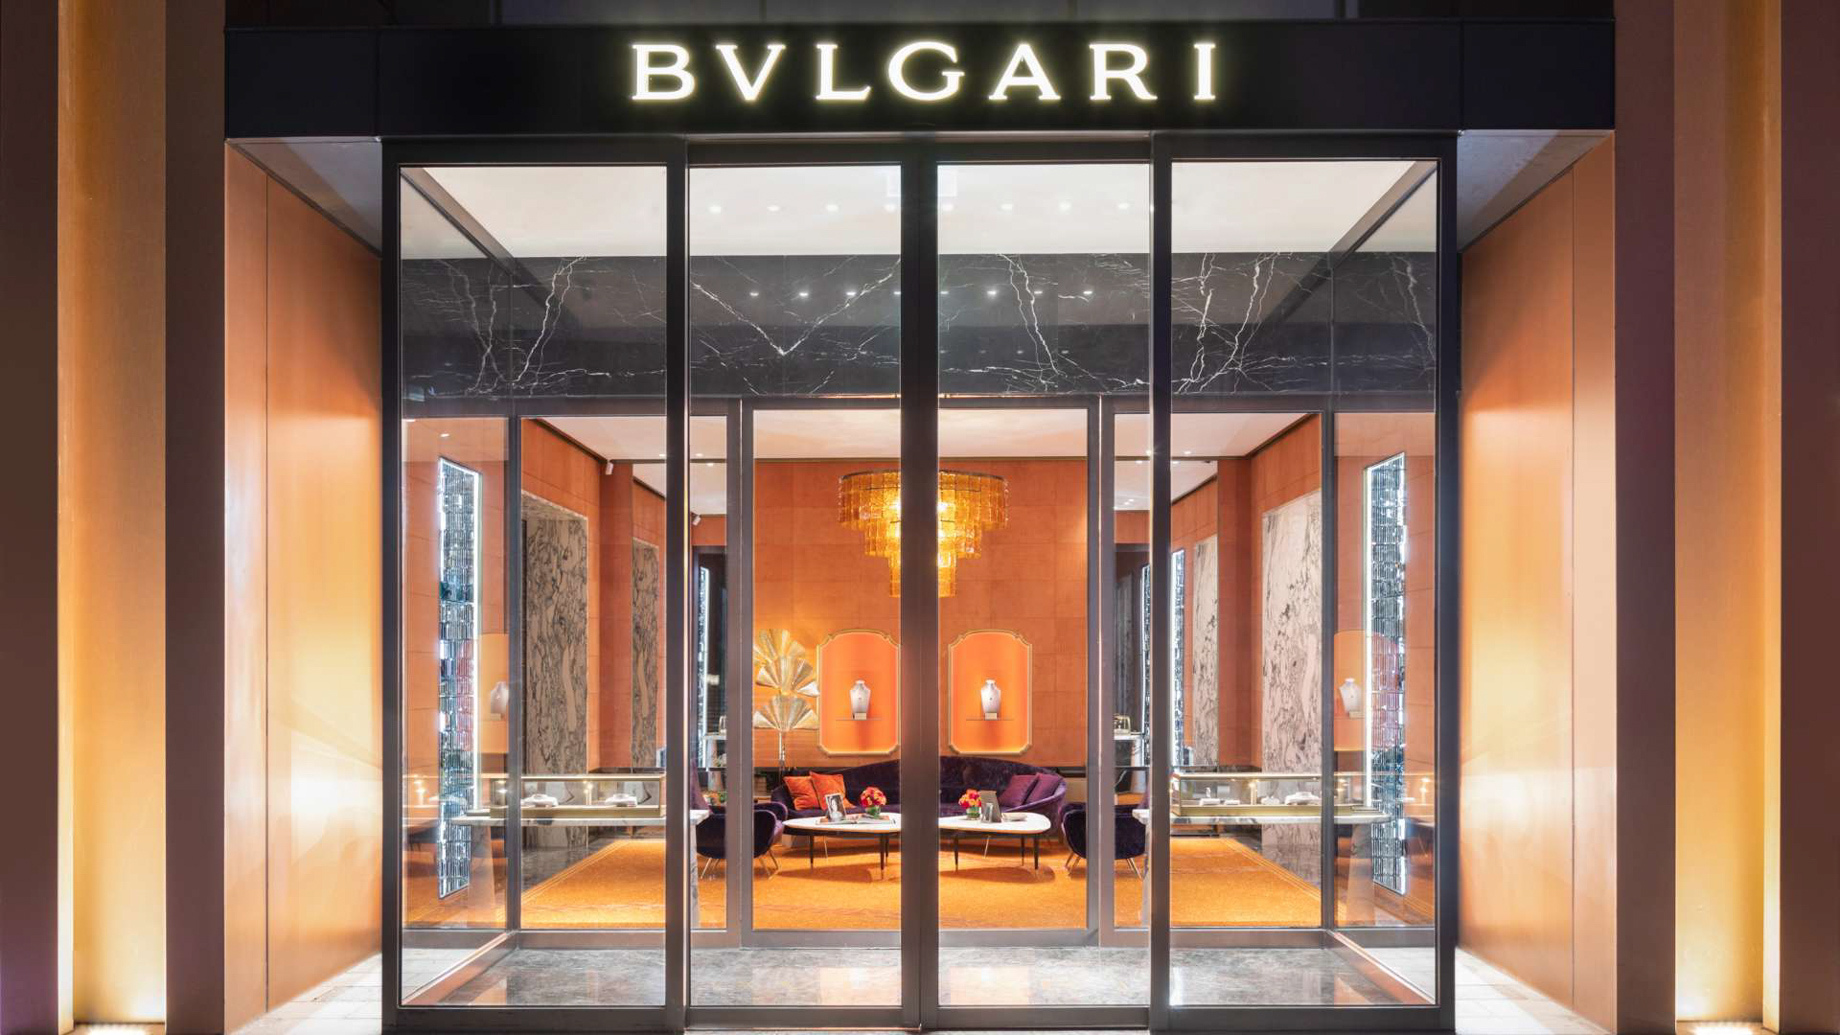 Bvlgari Hotel Shanghai - Shanghai, China - Bvlgari Boutique